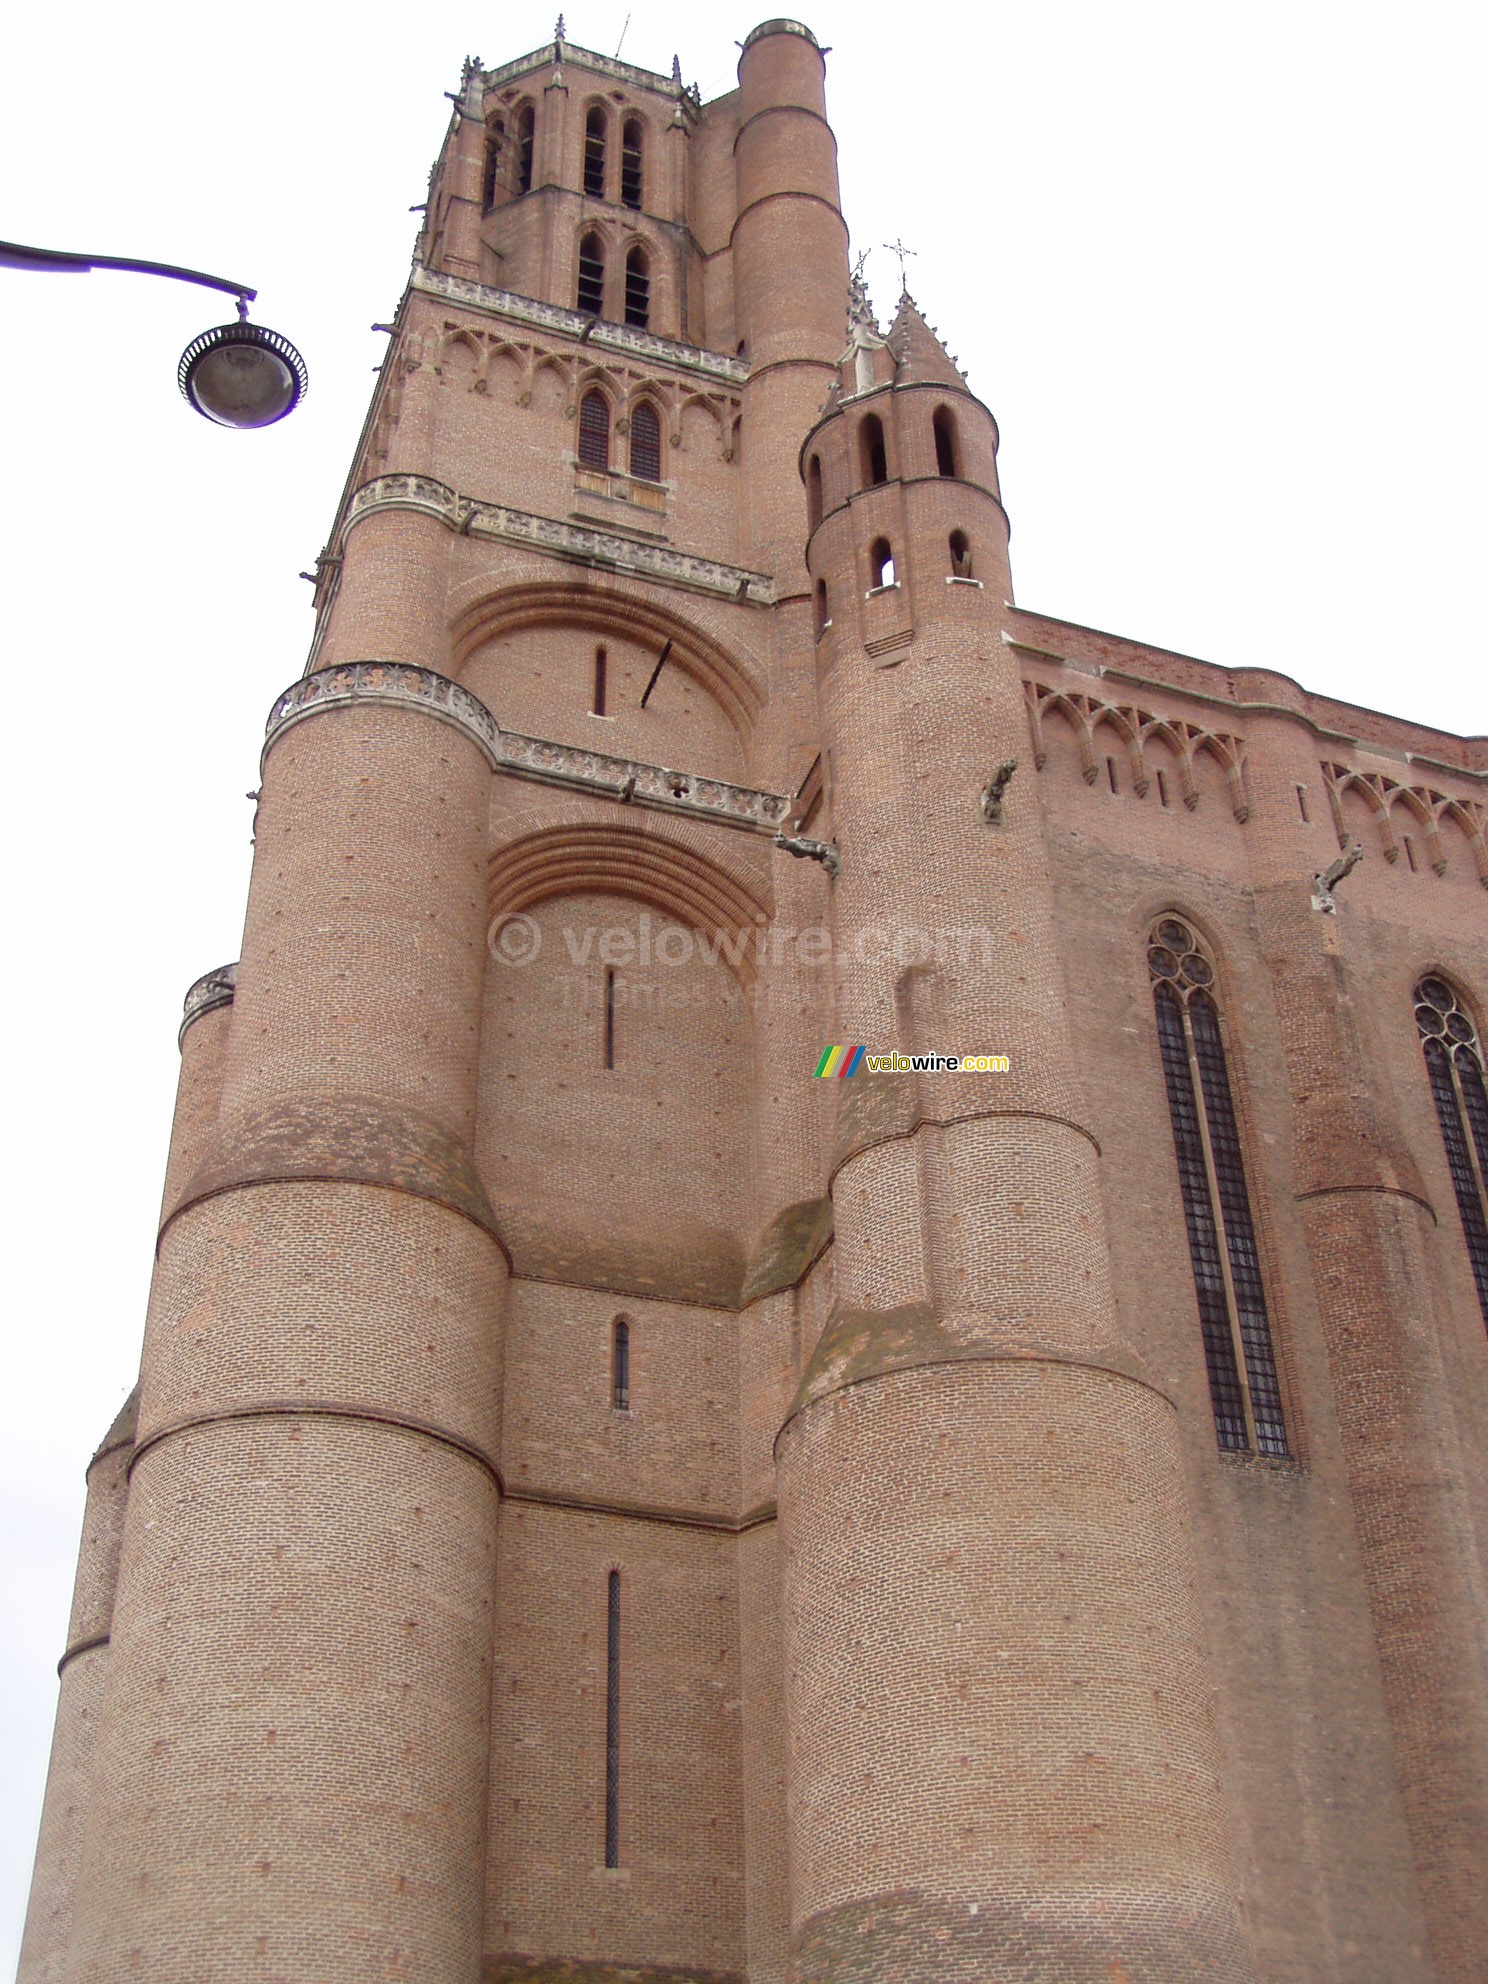 The Basilique Sainte-Ccile in Albi